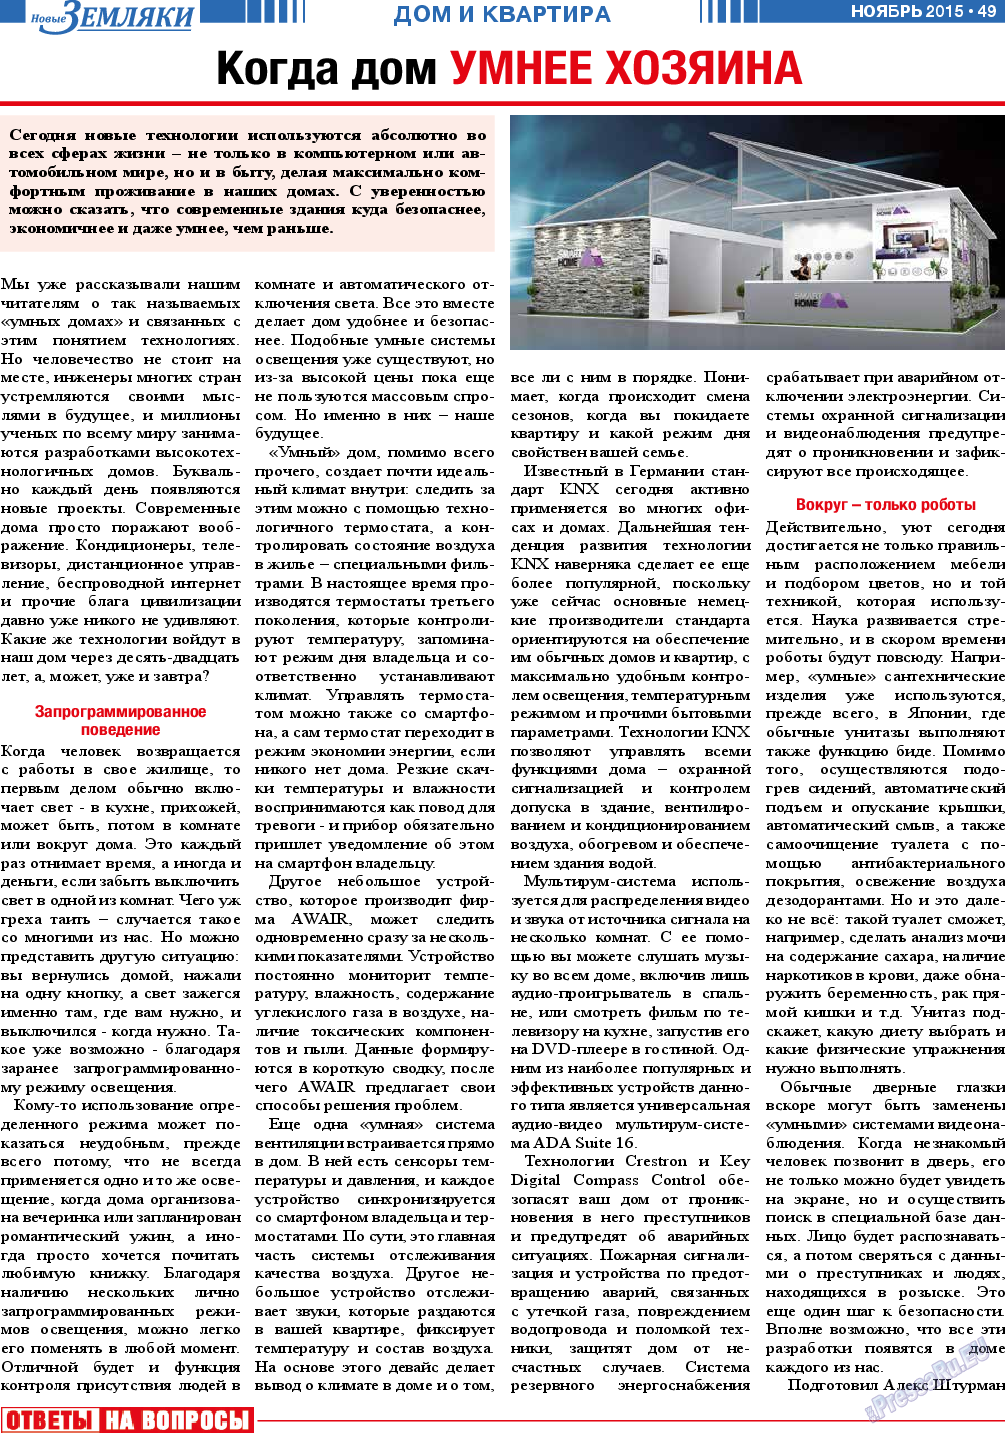 Новые Земляки, газета. 2015 №11 стр.49